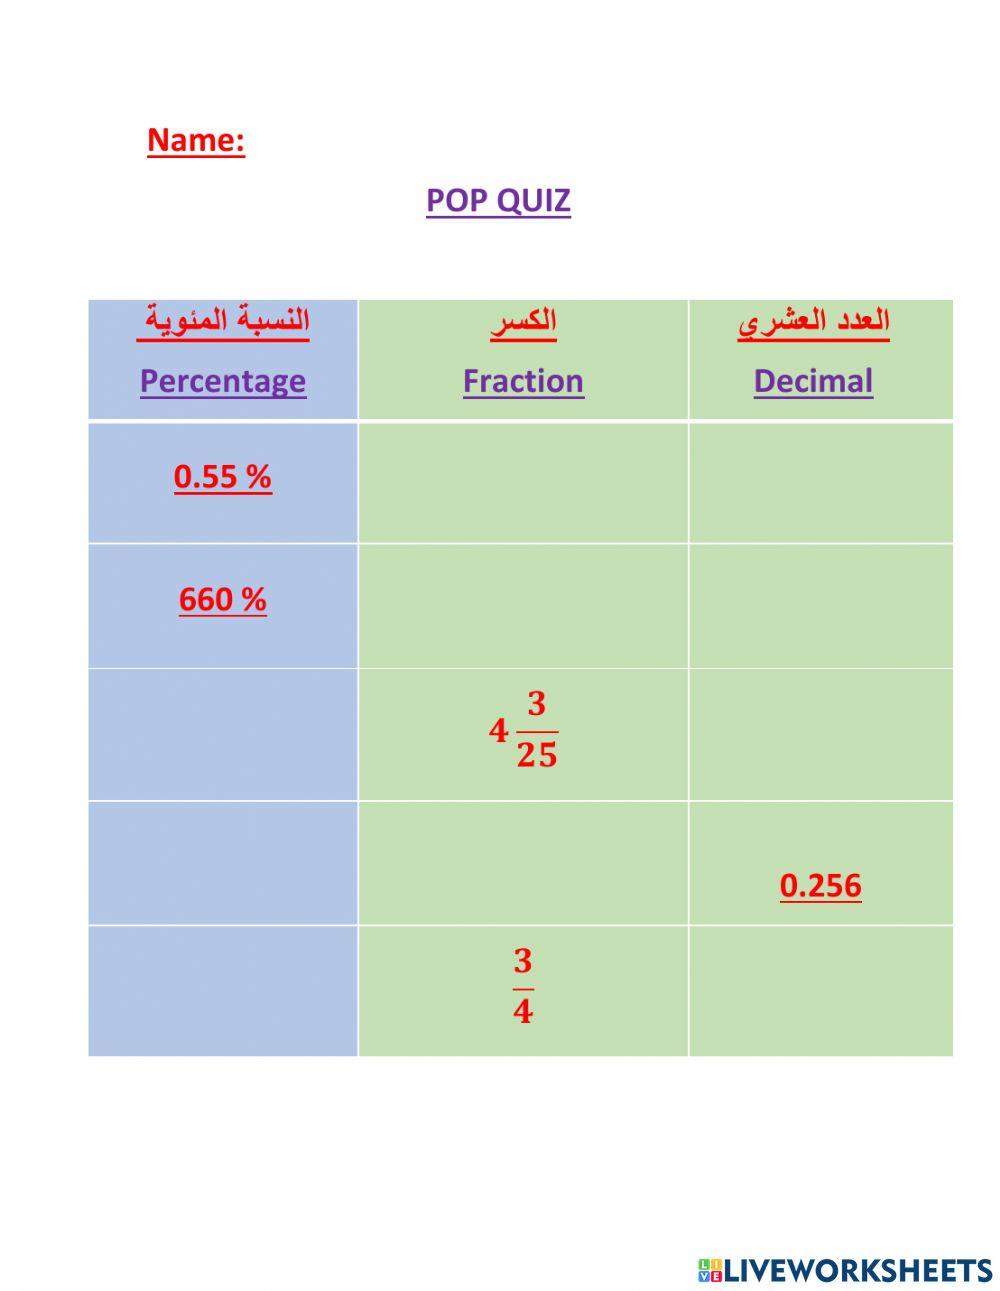 Percentages, fractions and decimals